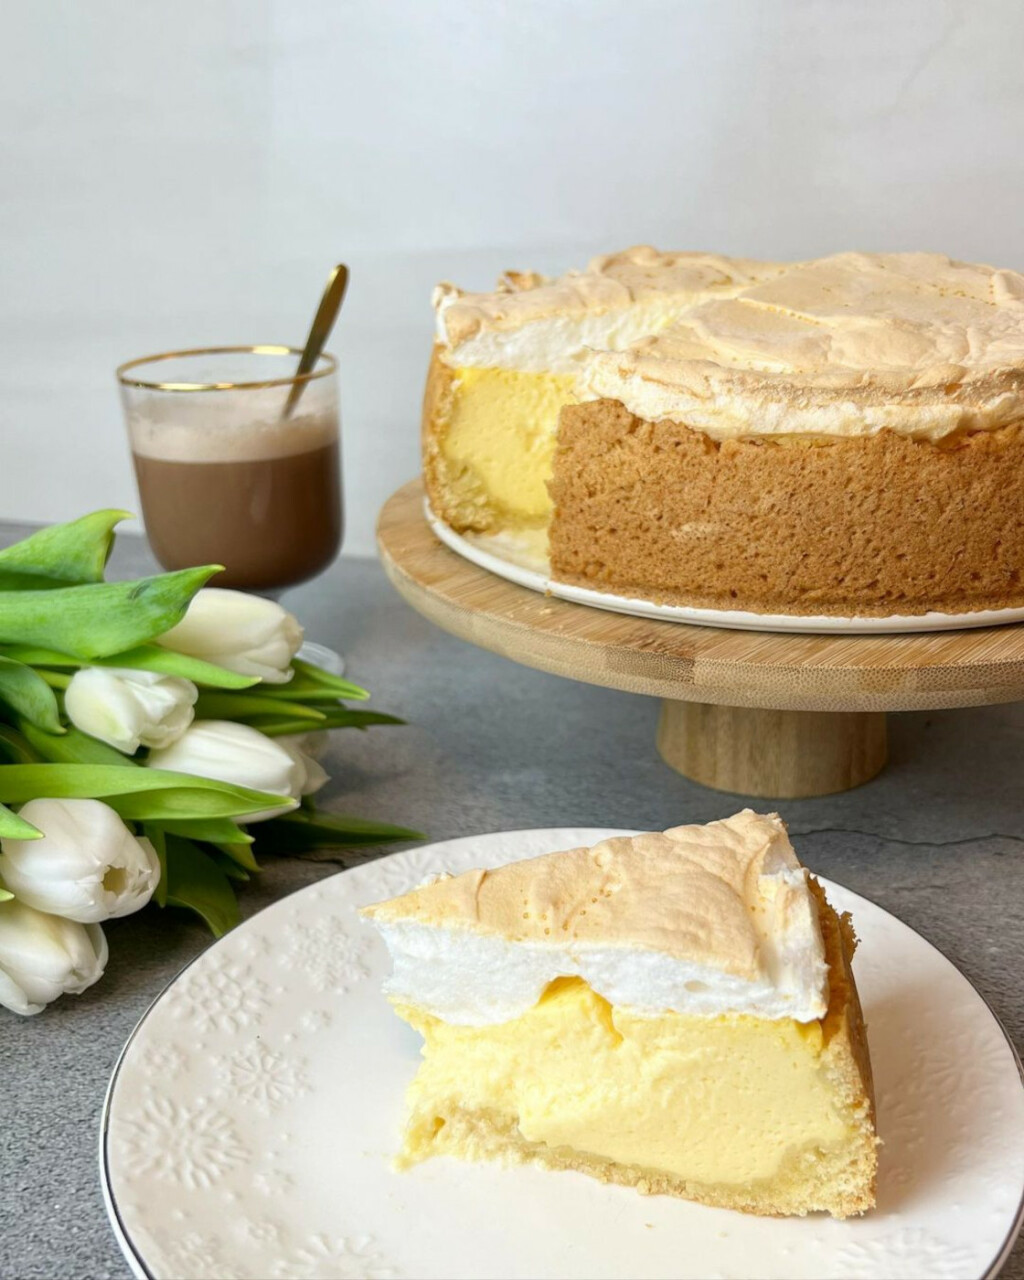 Brza torta od prhkog tijesta, sira i bjelanjka po receptu food blogerice Monike - 1